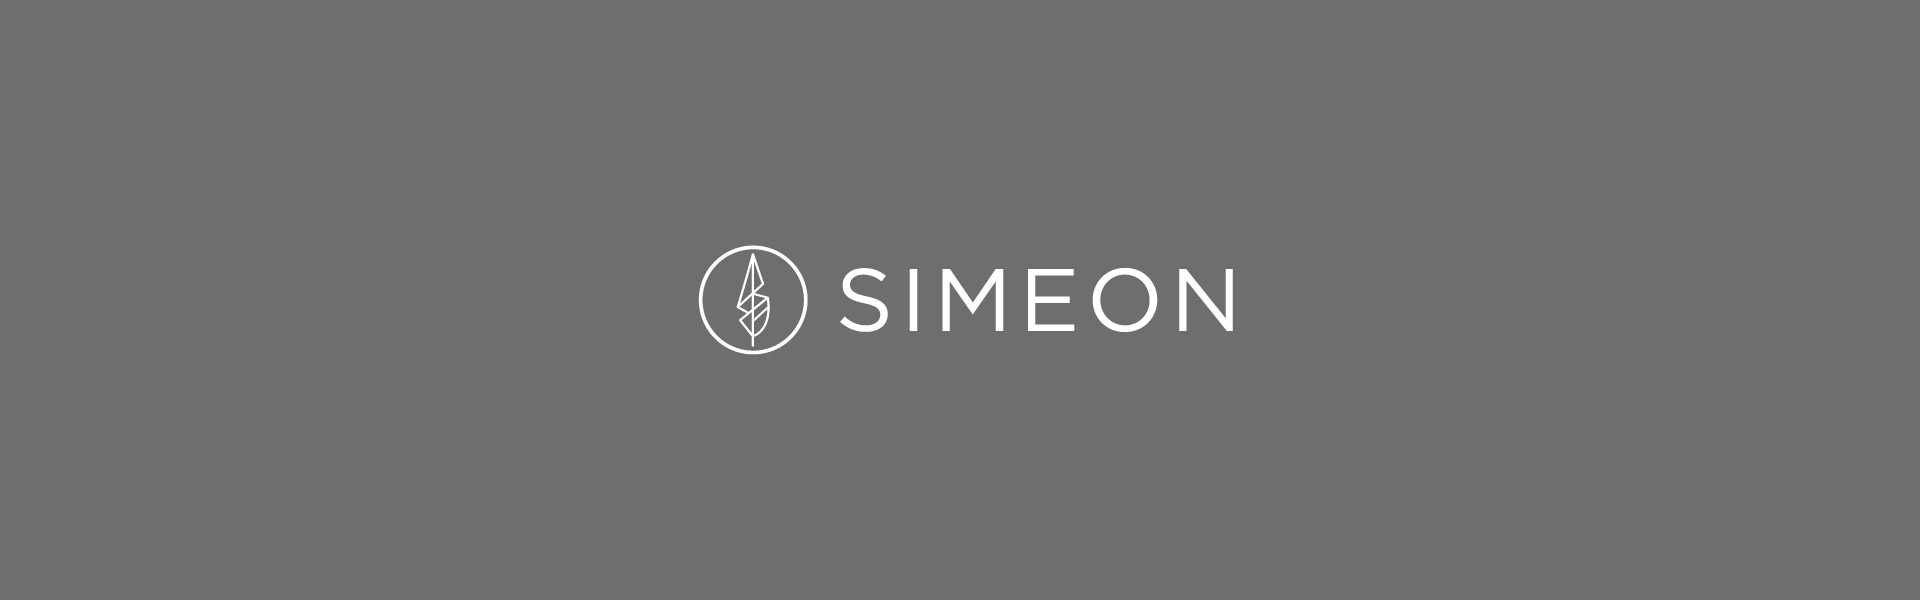 Logos-Instudio-Simeon